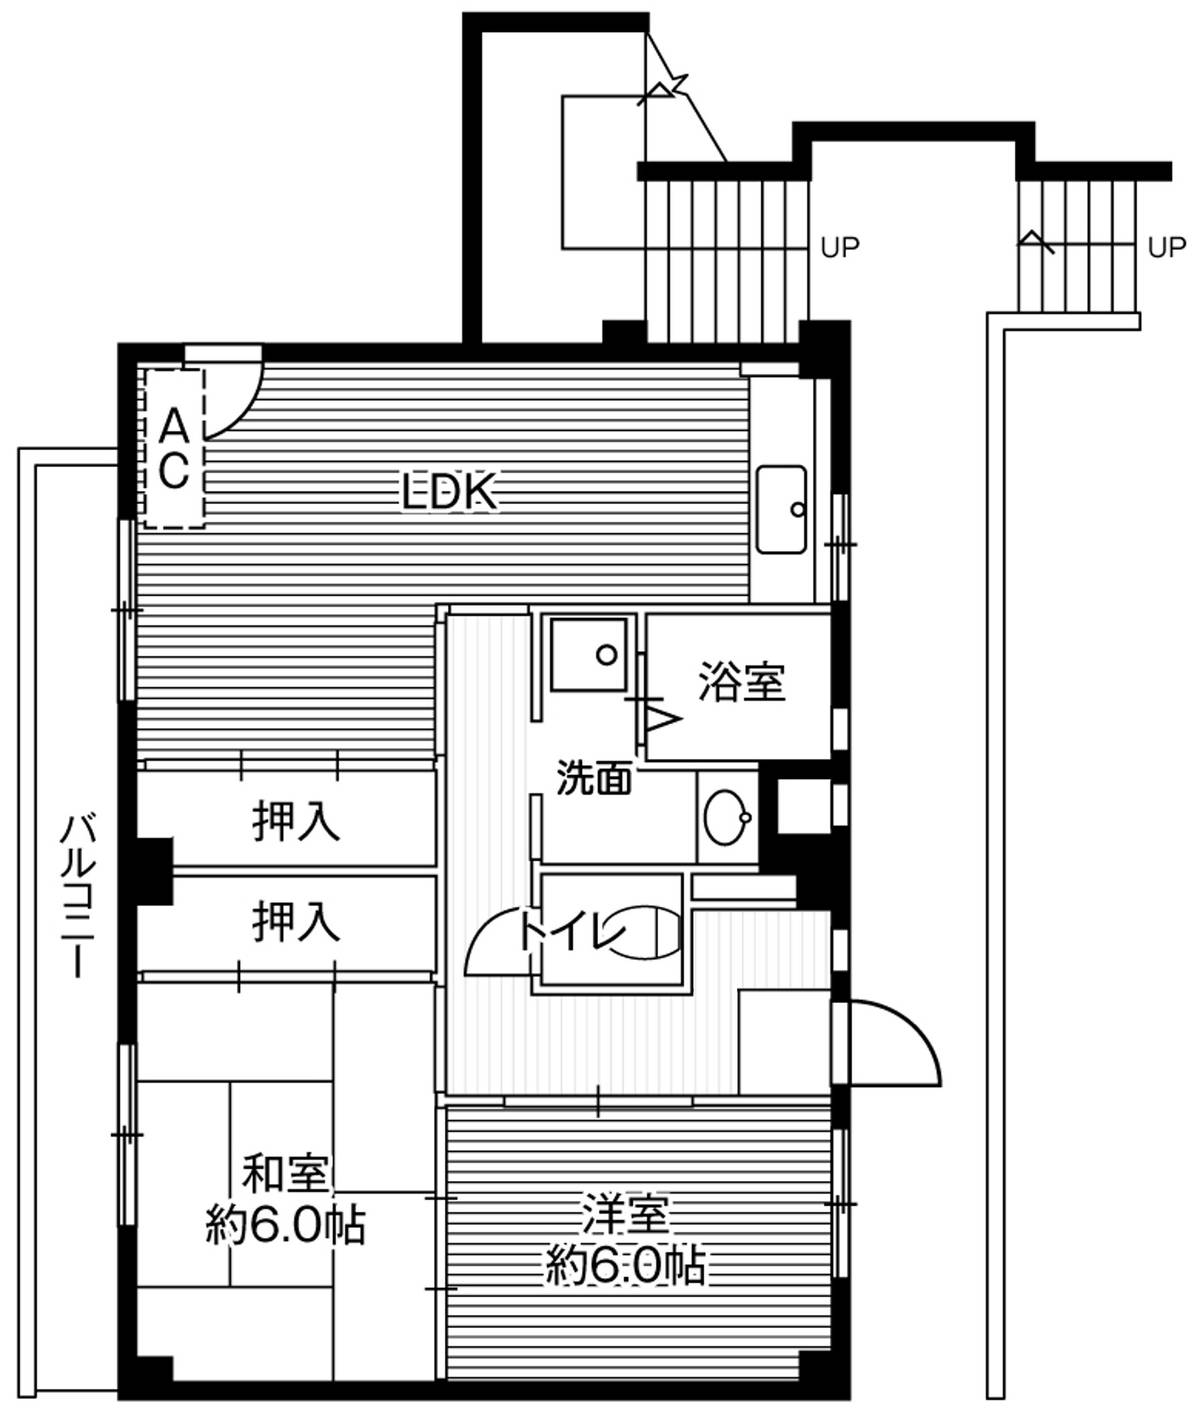 Sơ đồ phòng 2LDK của Village House Akita ở Akiruno-shi